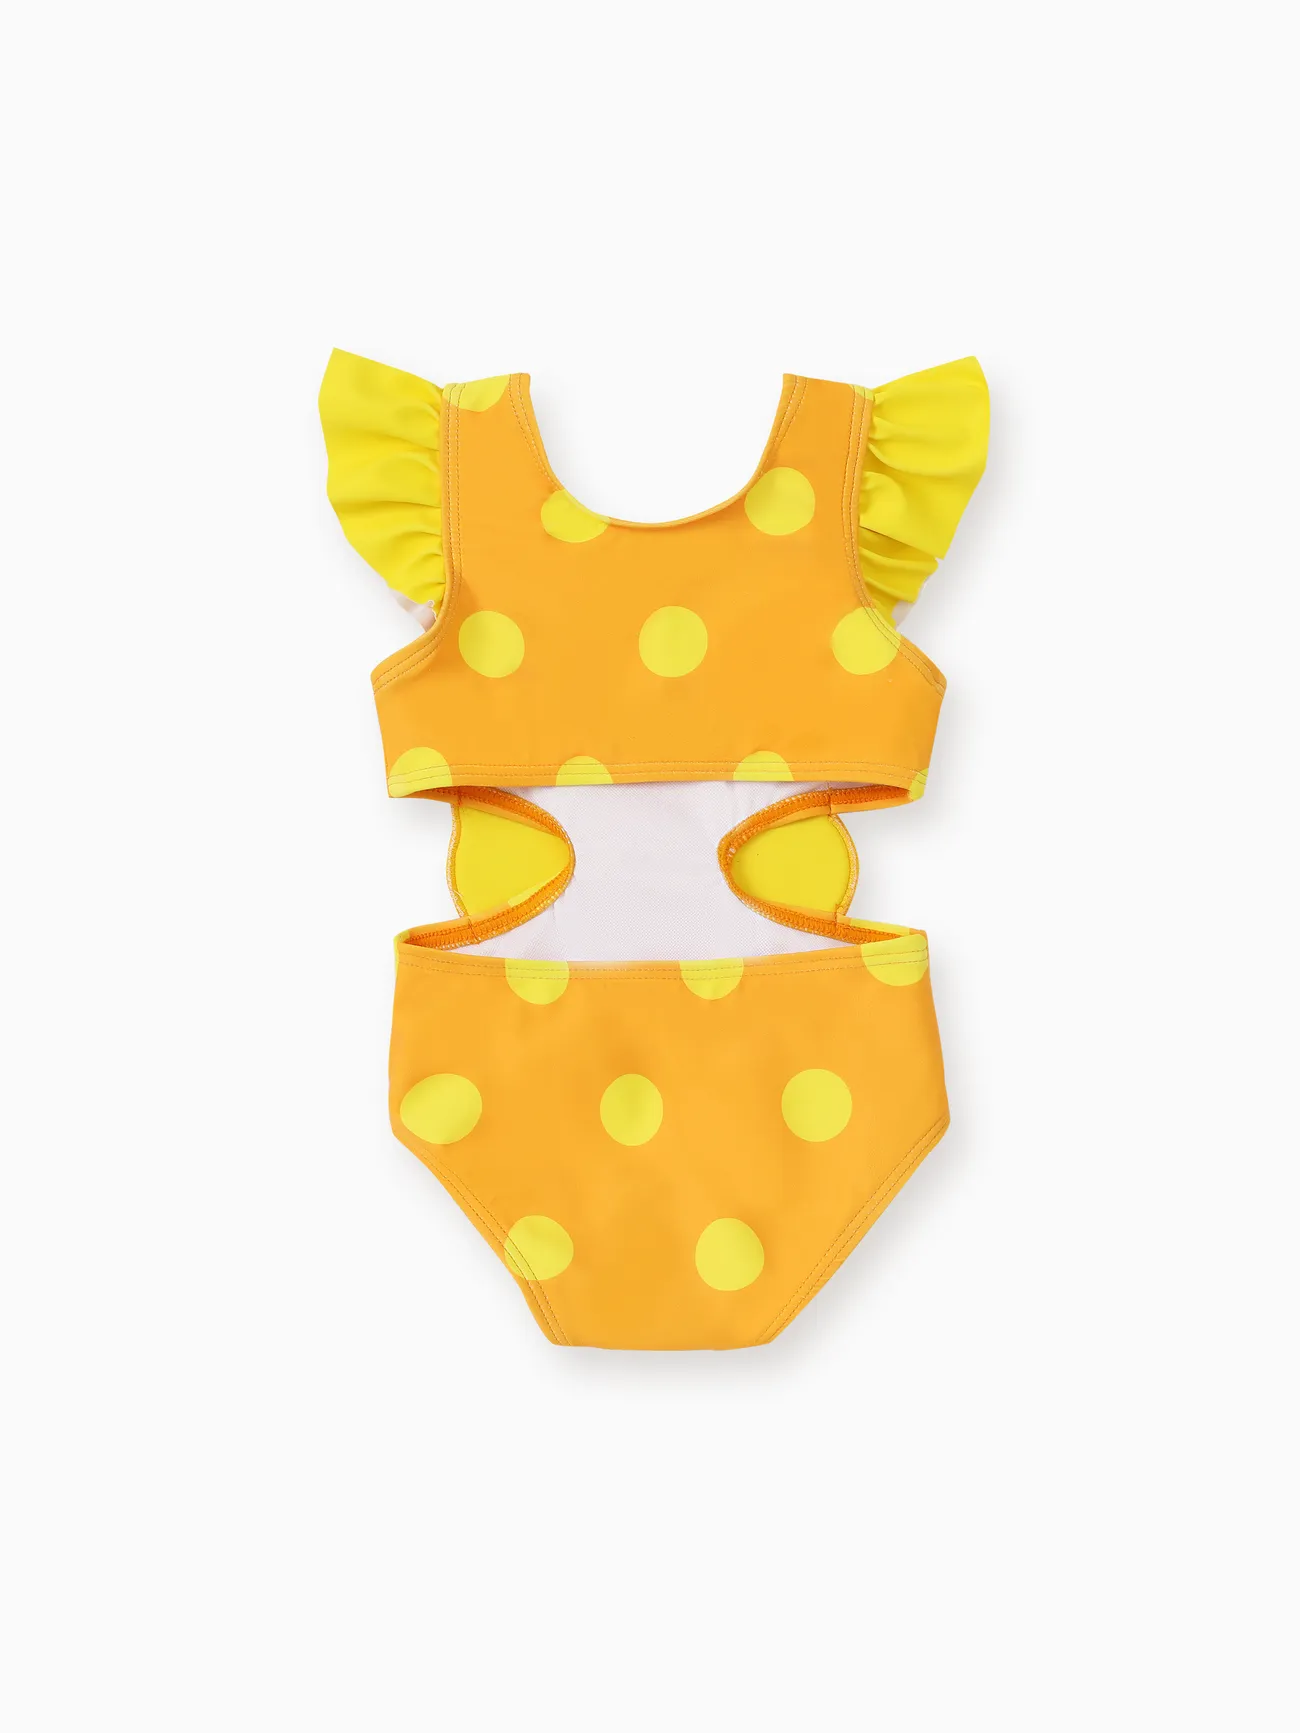 嬰兒 女 荷葉邊 兔仔 童趣 背心 泳衣 黃色 big image 1